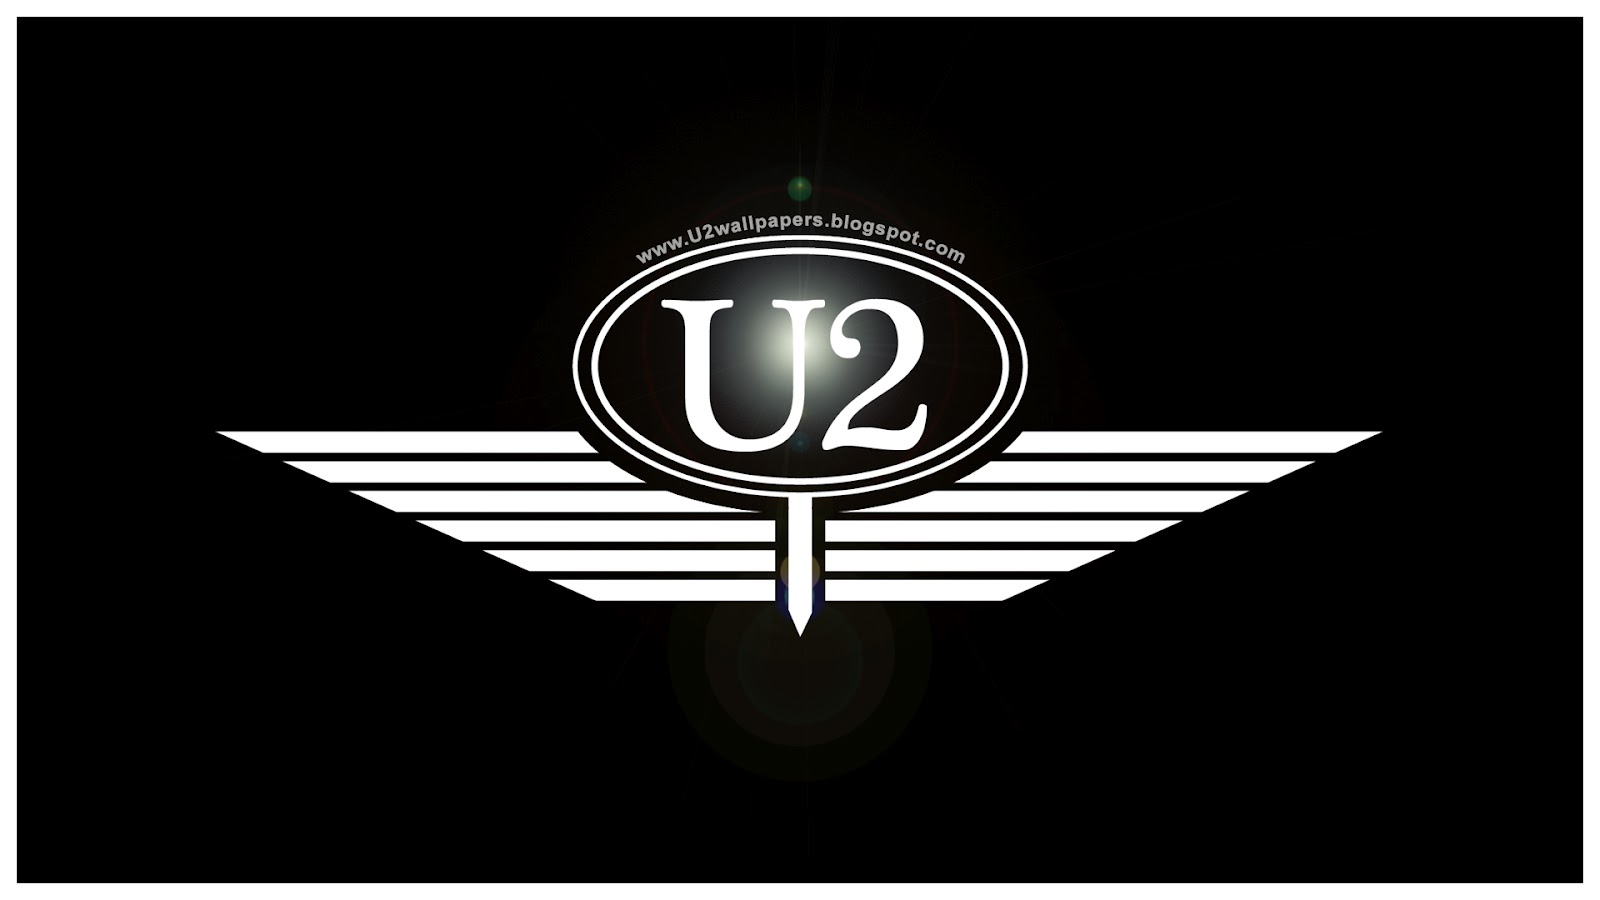 U2+WINGS+WALL+-+10-09-12.jpg